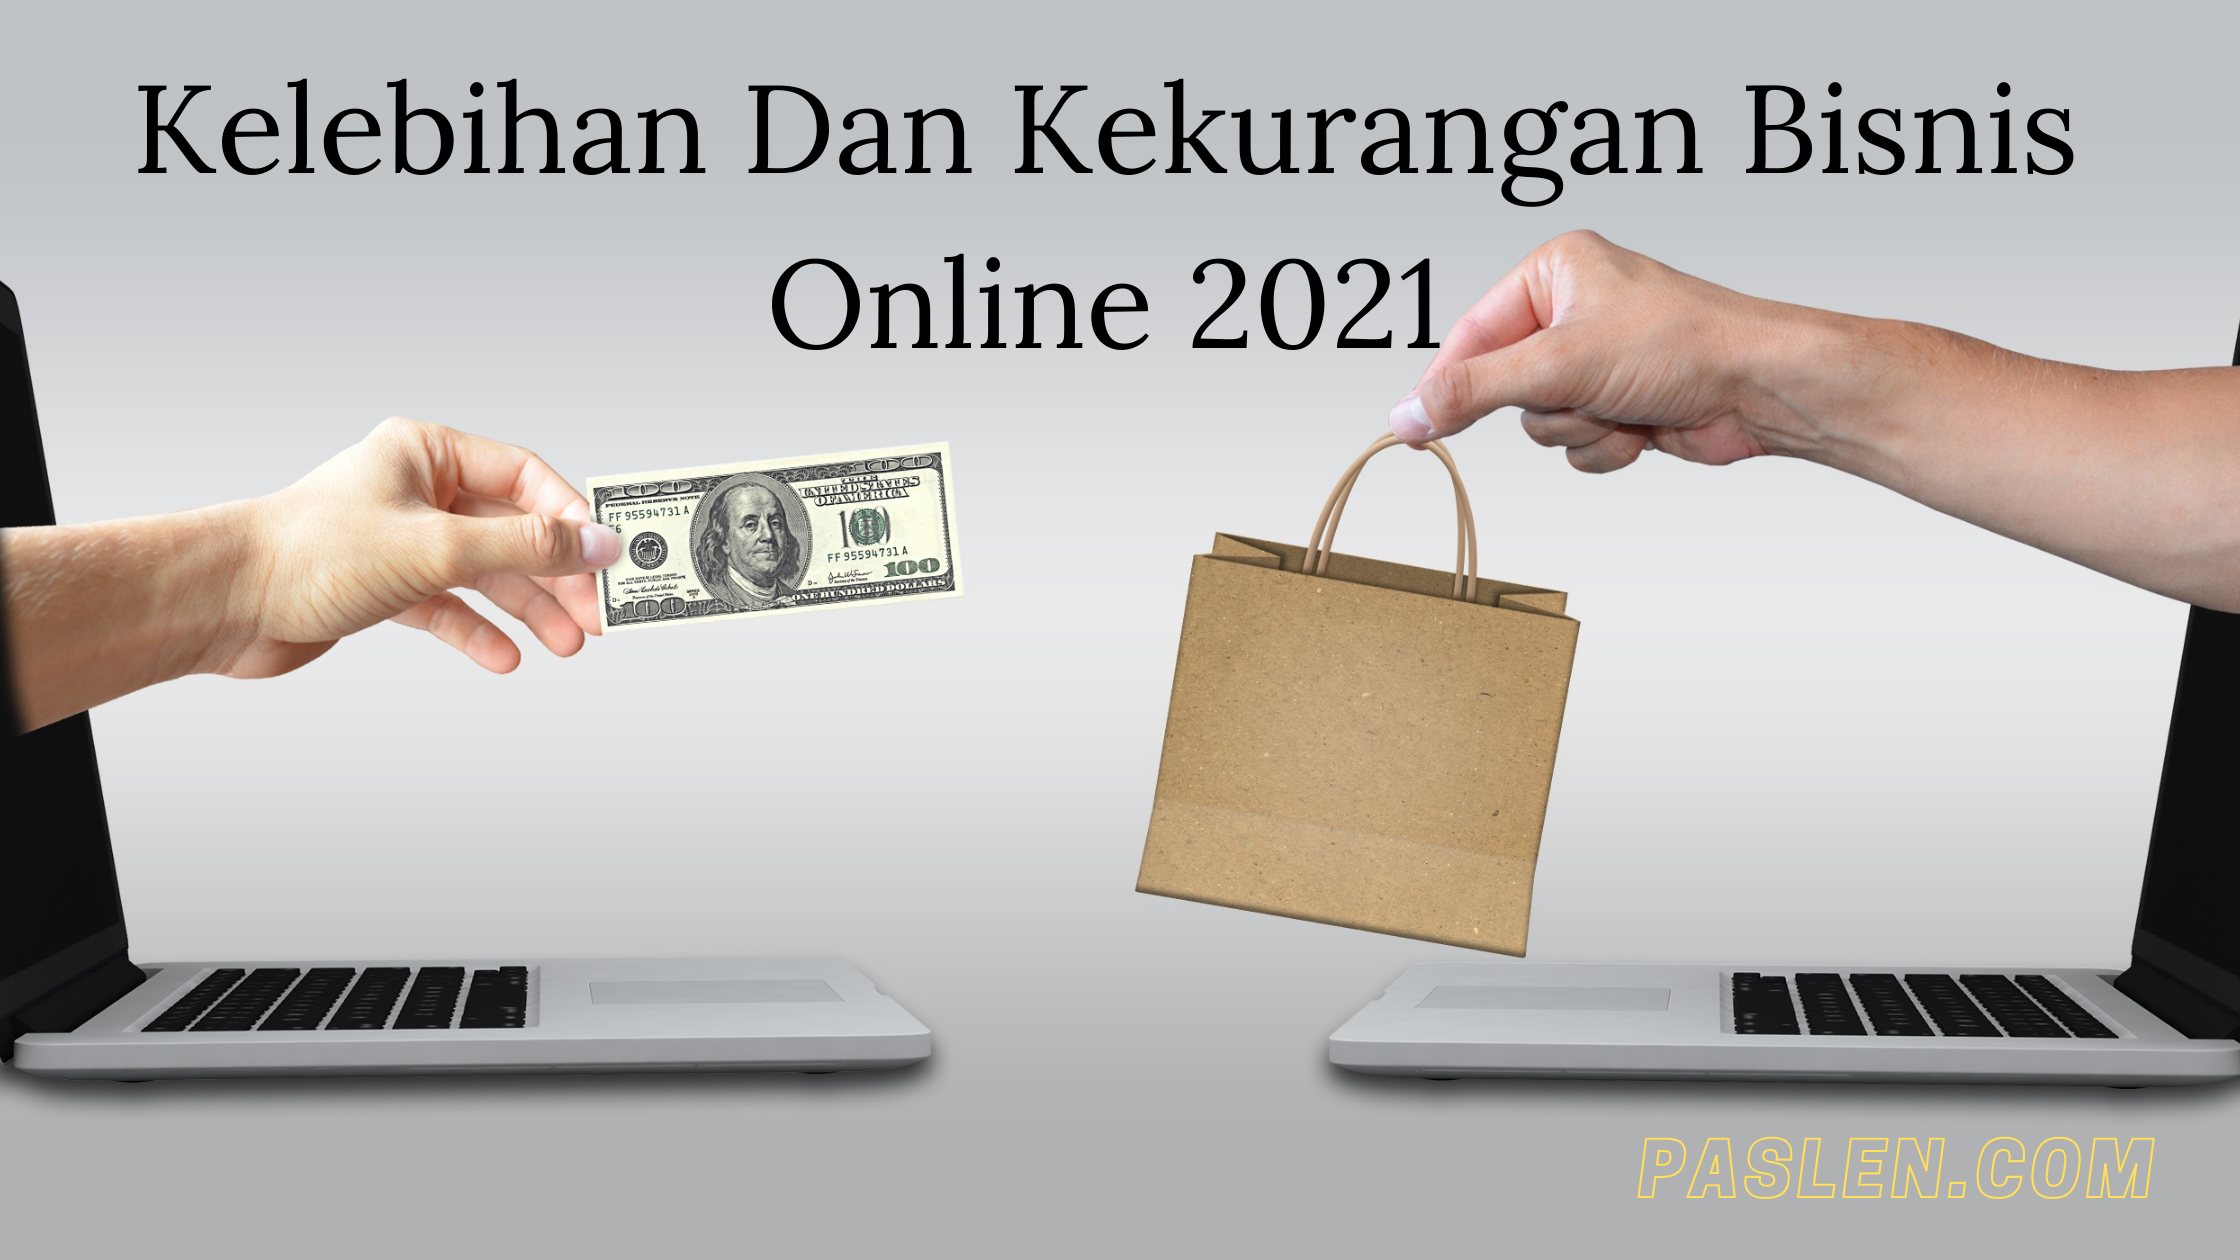 Kelebihan Dan Kekurangan Bisnis Online 2021 - Paslen